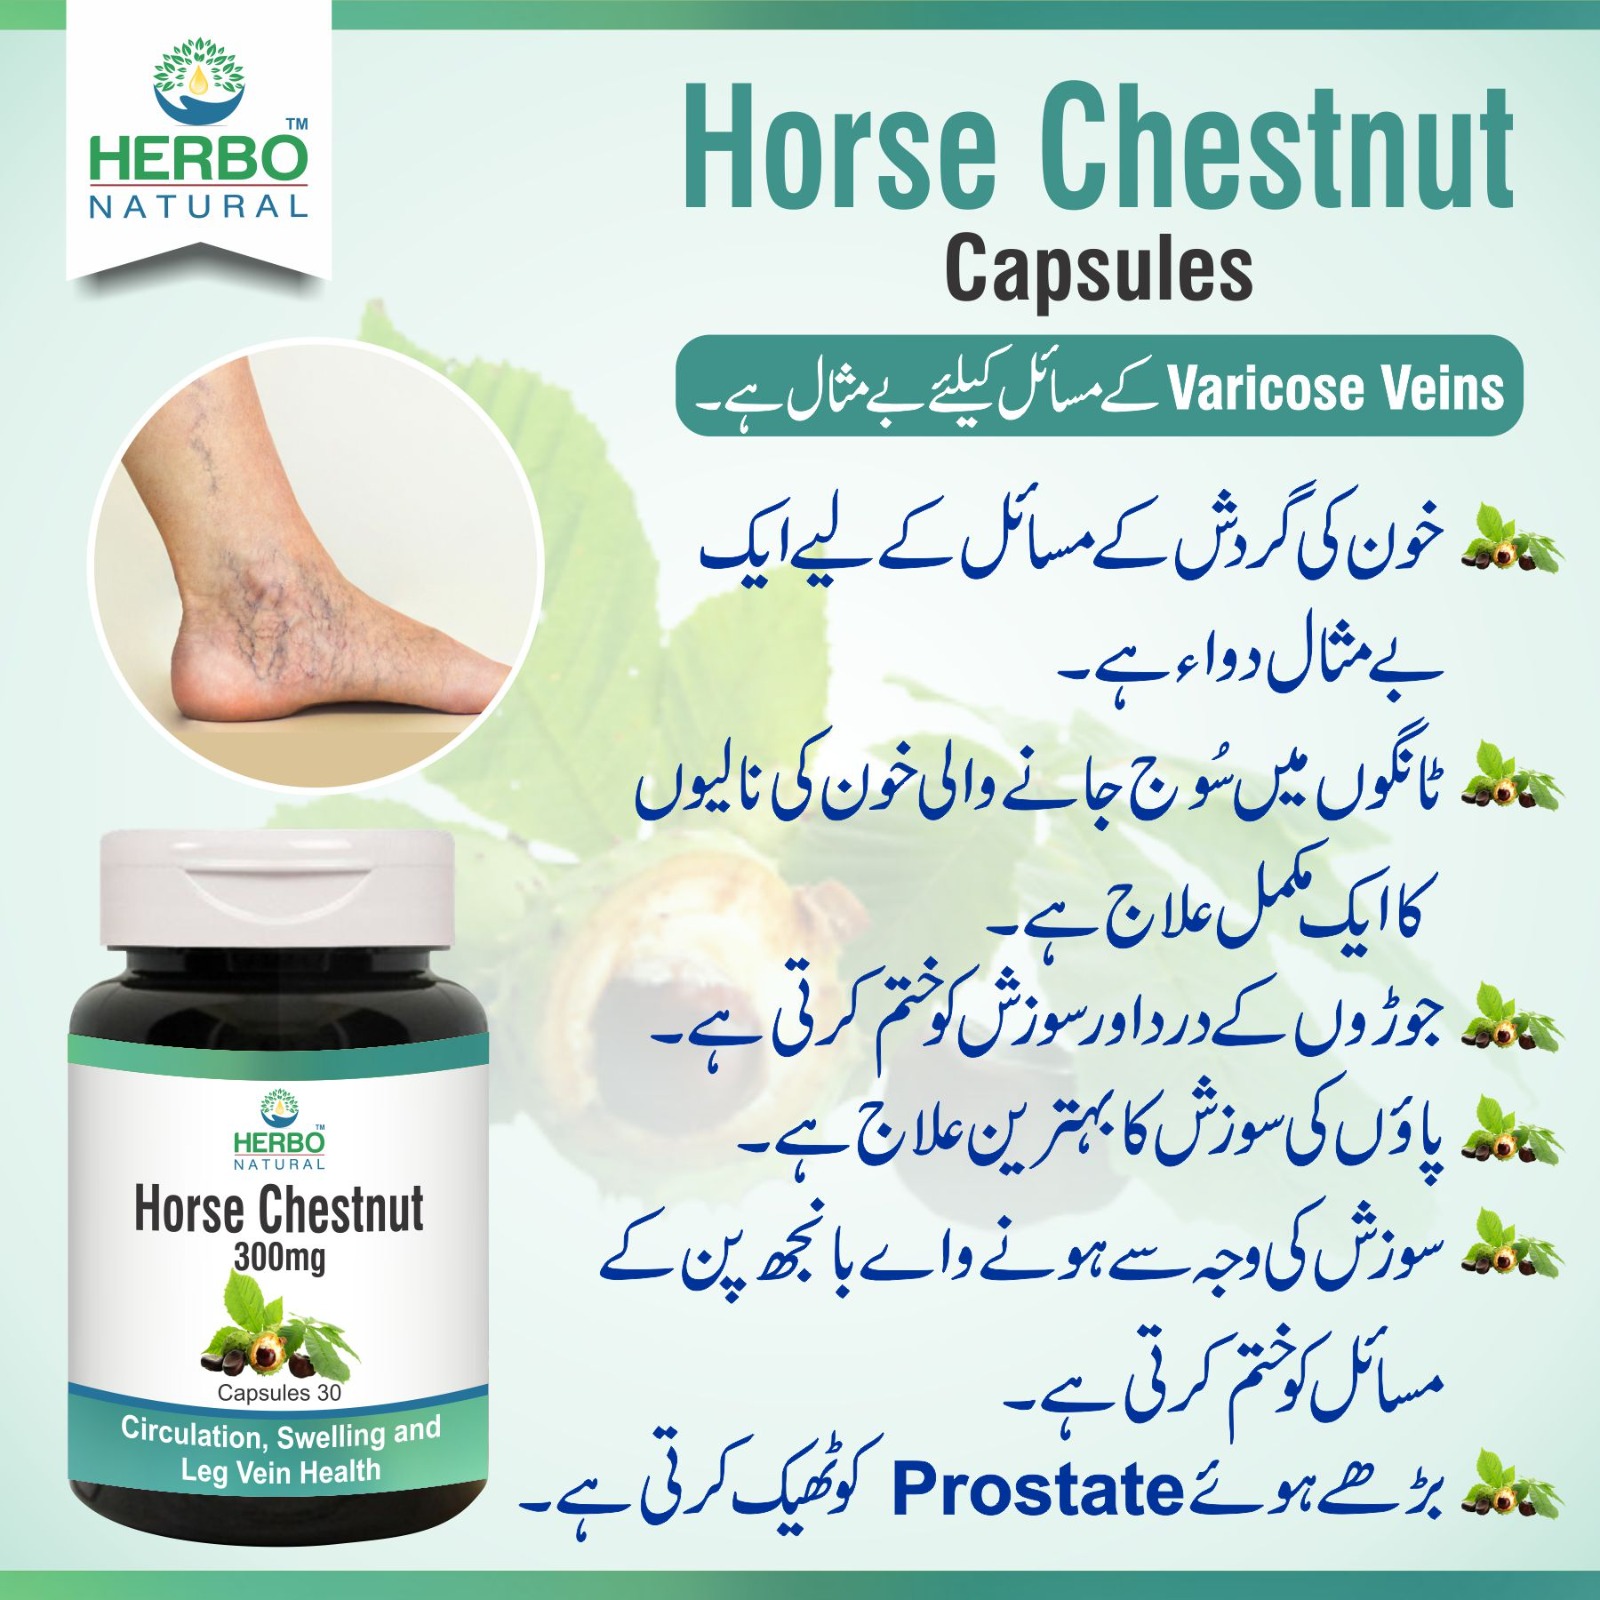 Horse chestnut capsules